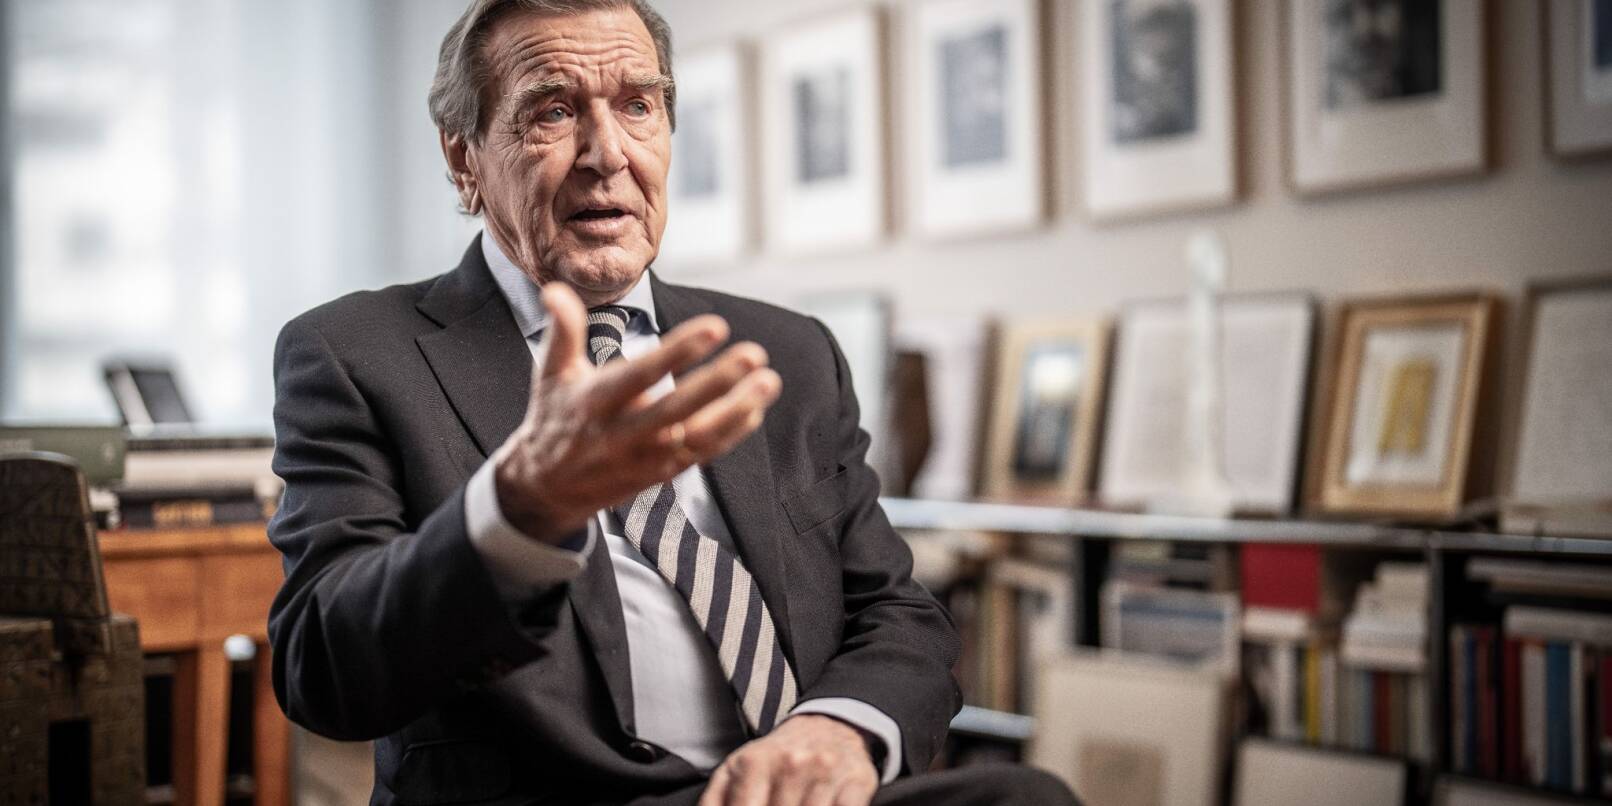 Altkanzler Gerhard Schröder hält trotz des russischen Angriffskriegs gegen die Ukraine an seiner Freundschaft mit dem russischen Präsidenten Wladimir Putin fest.